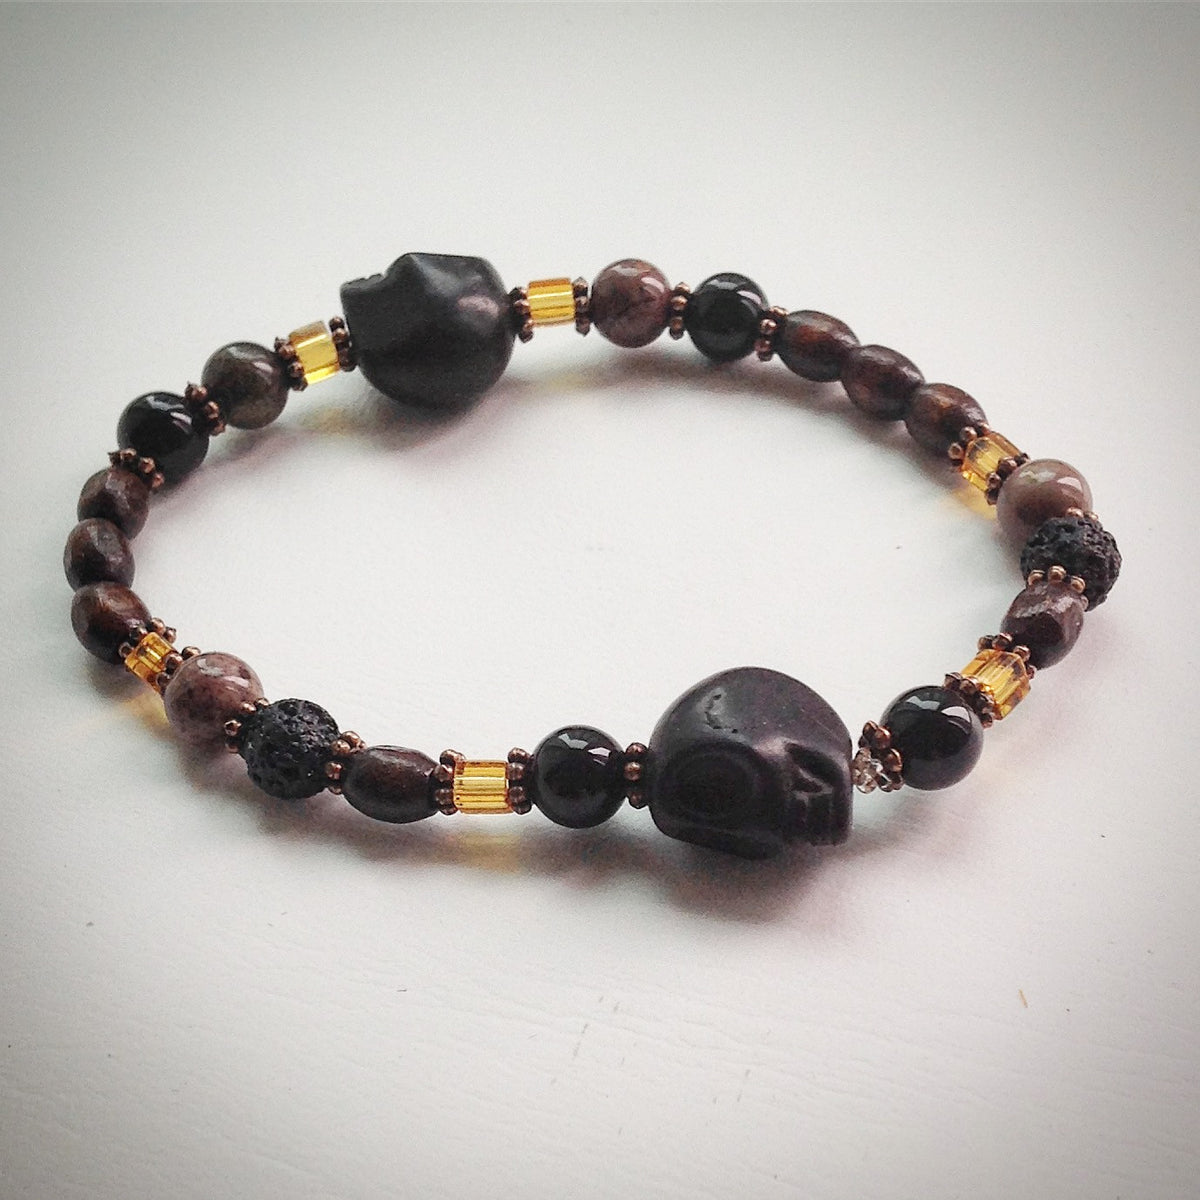 Beaded bracelet - Black Skulls, Jasper, Onyx, glass and wooden beads ...